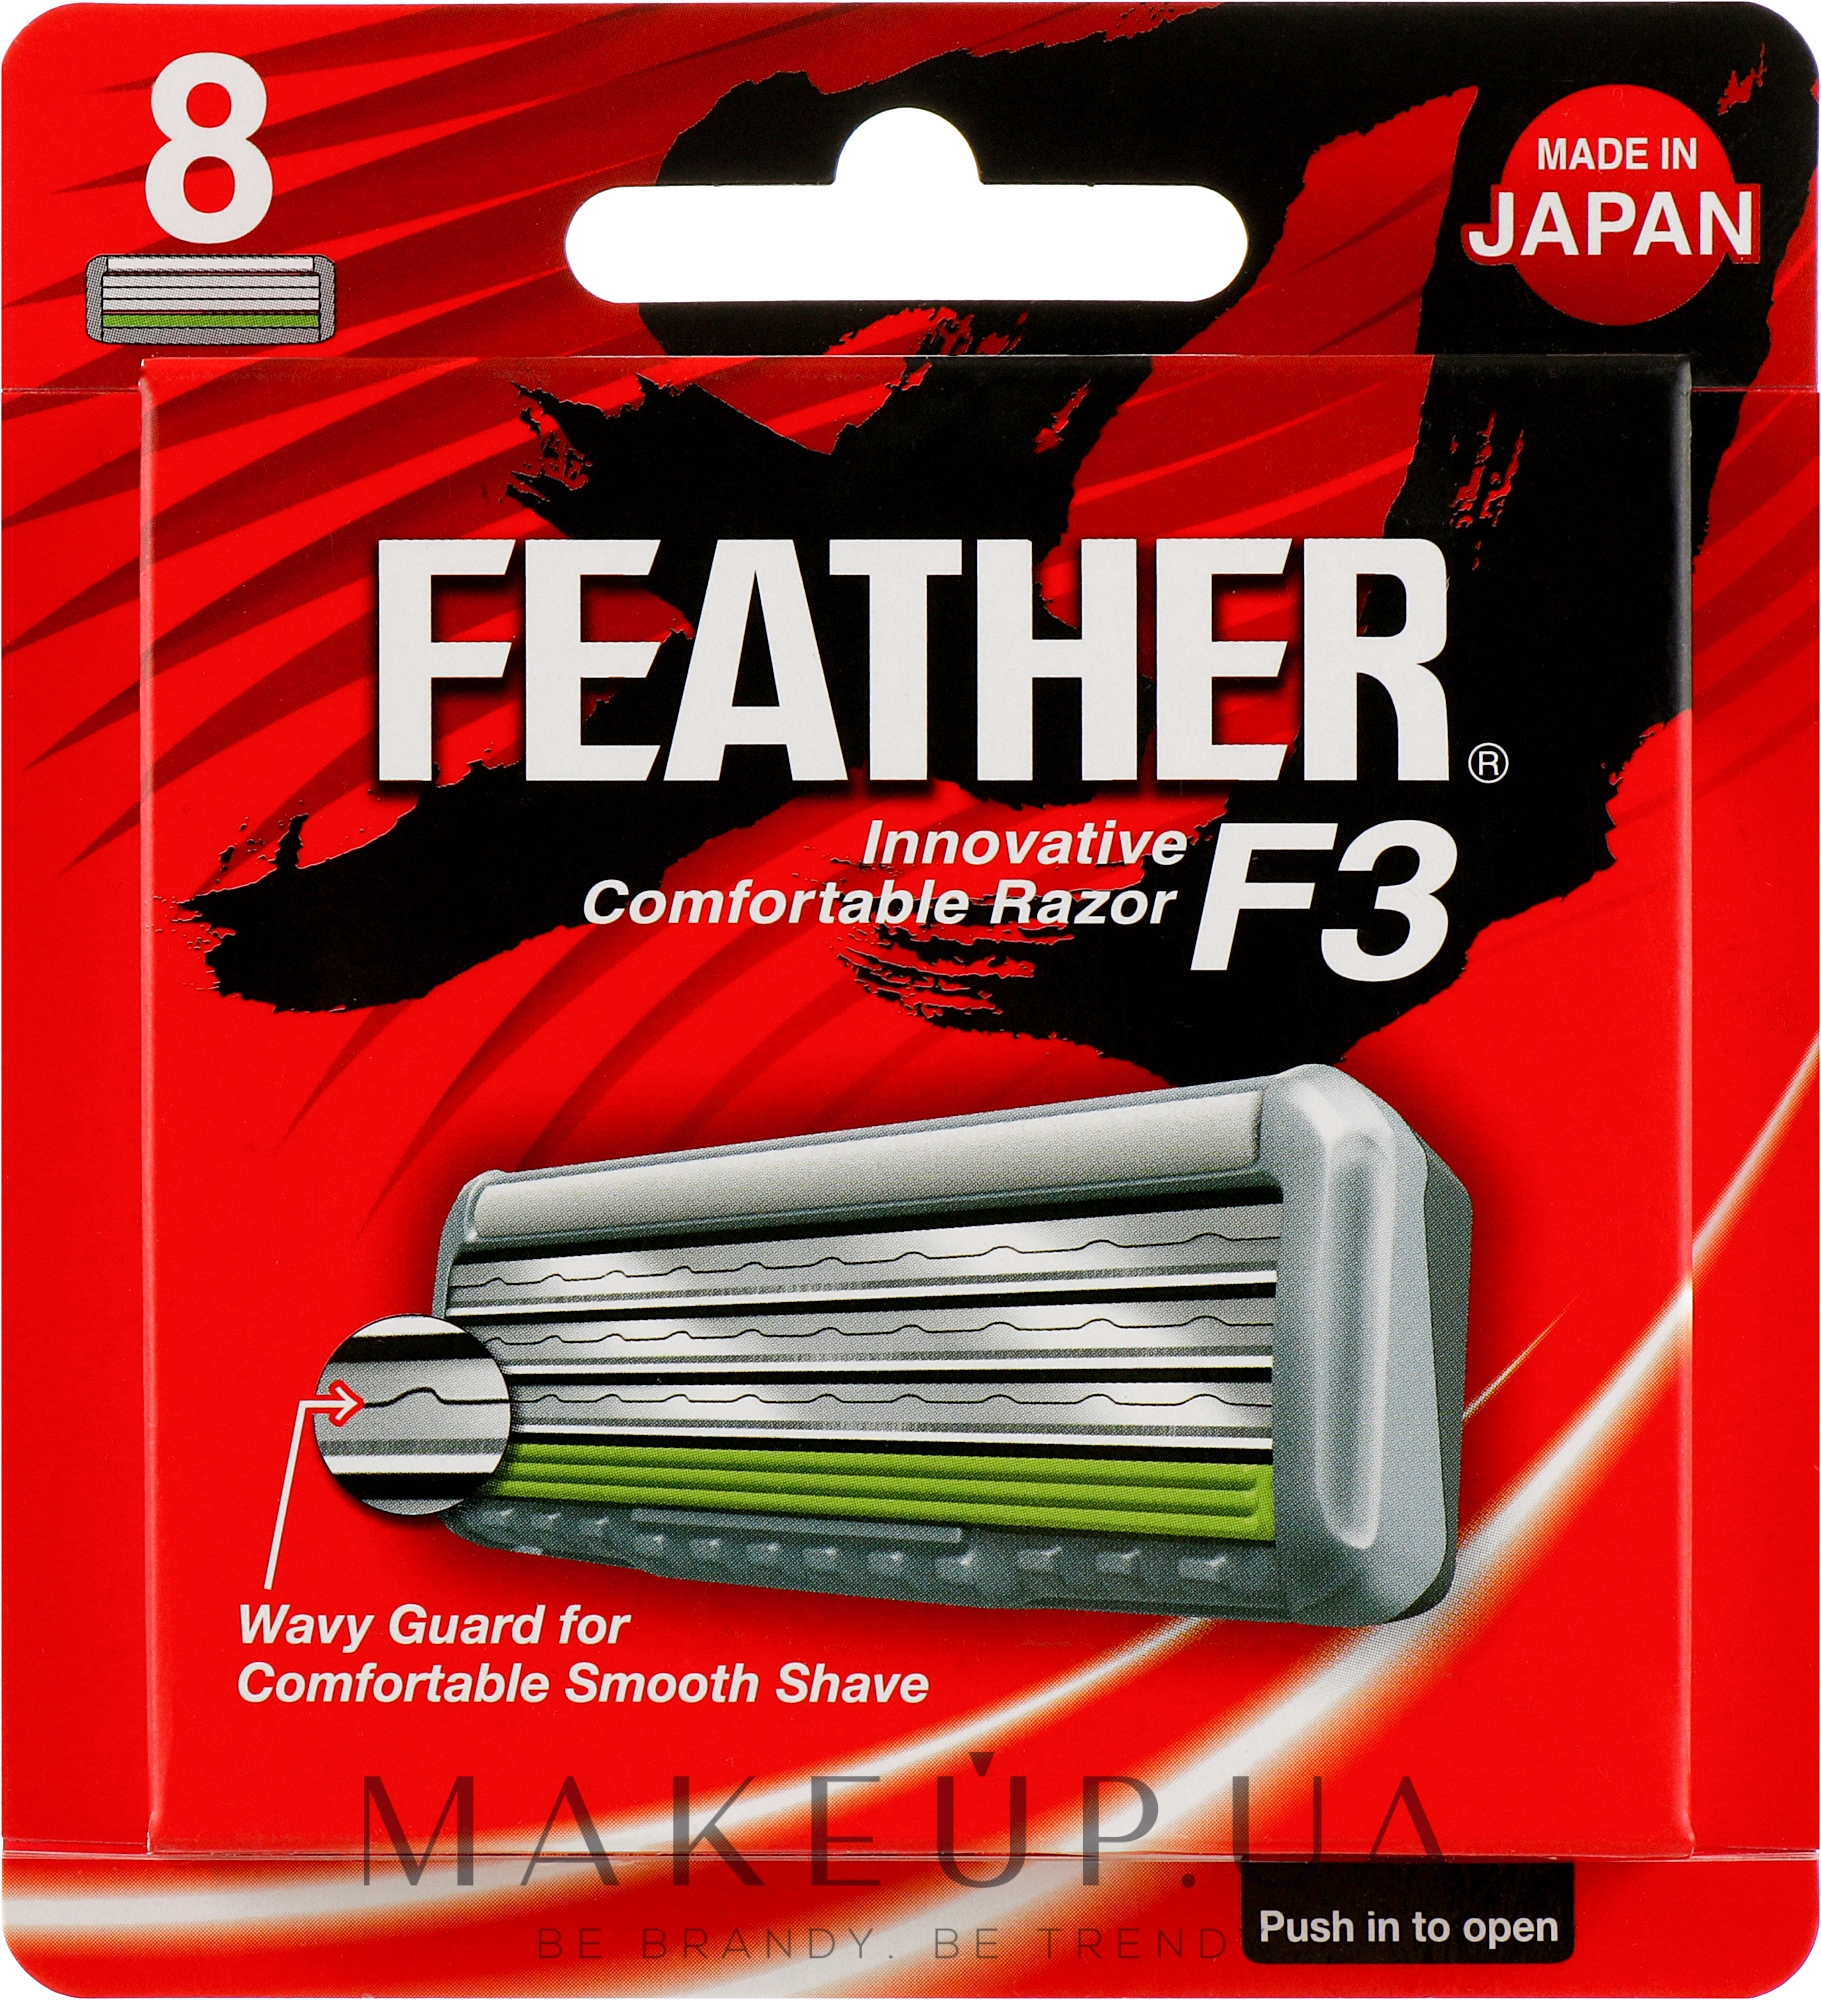 Змінні касети з потрійним лезом "F3", 8 шт. - Feather F3 Triple Blade 8 Cartridges — фото 8шт